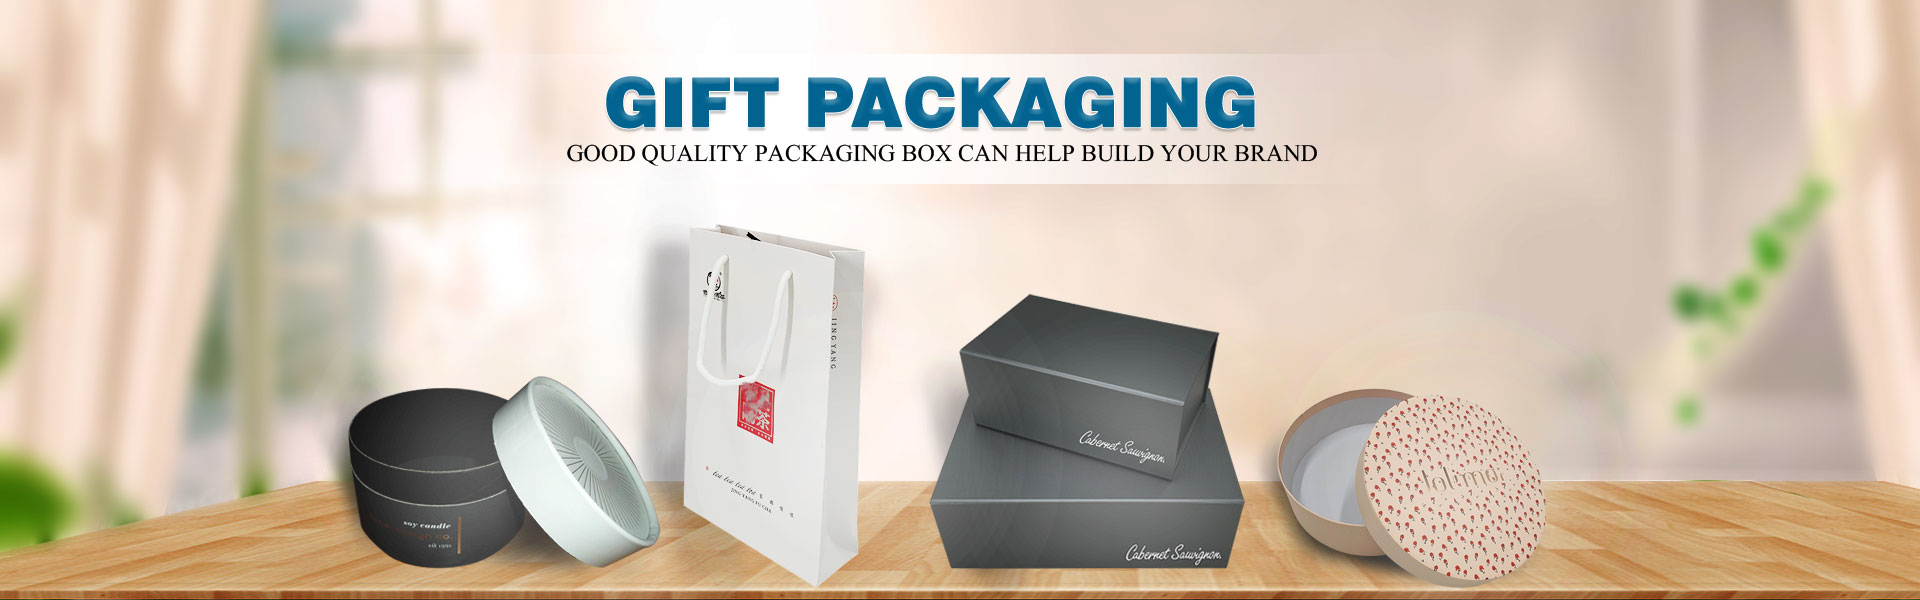 Skrzynka papierowa, pudełko na prezenty,,Dongguan Yisheng Packaging Co., Ltd